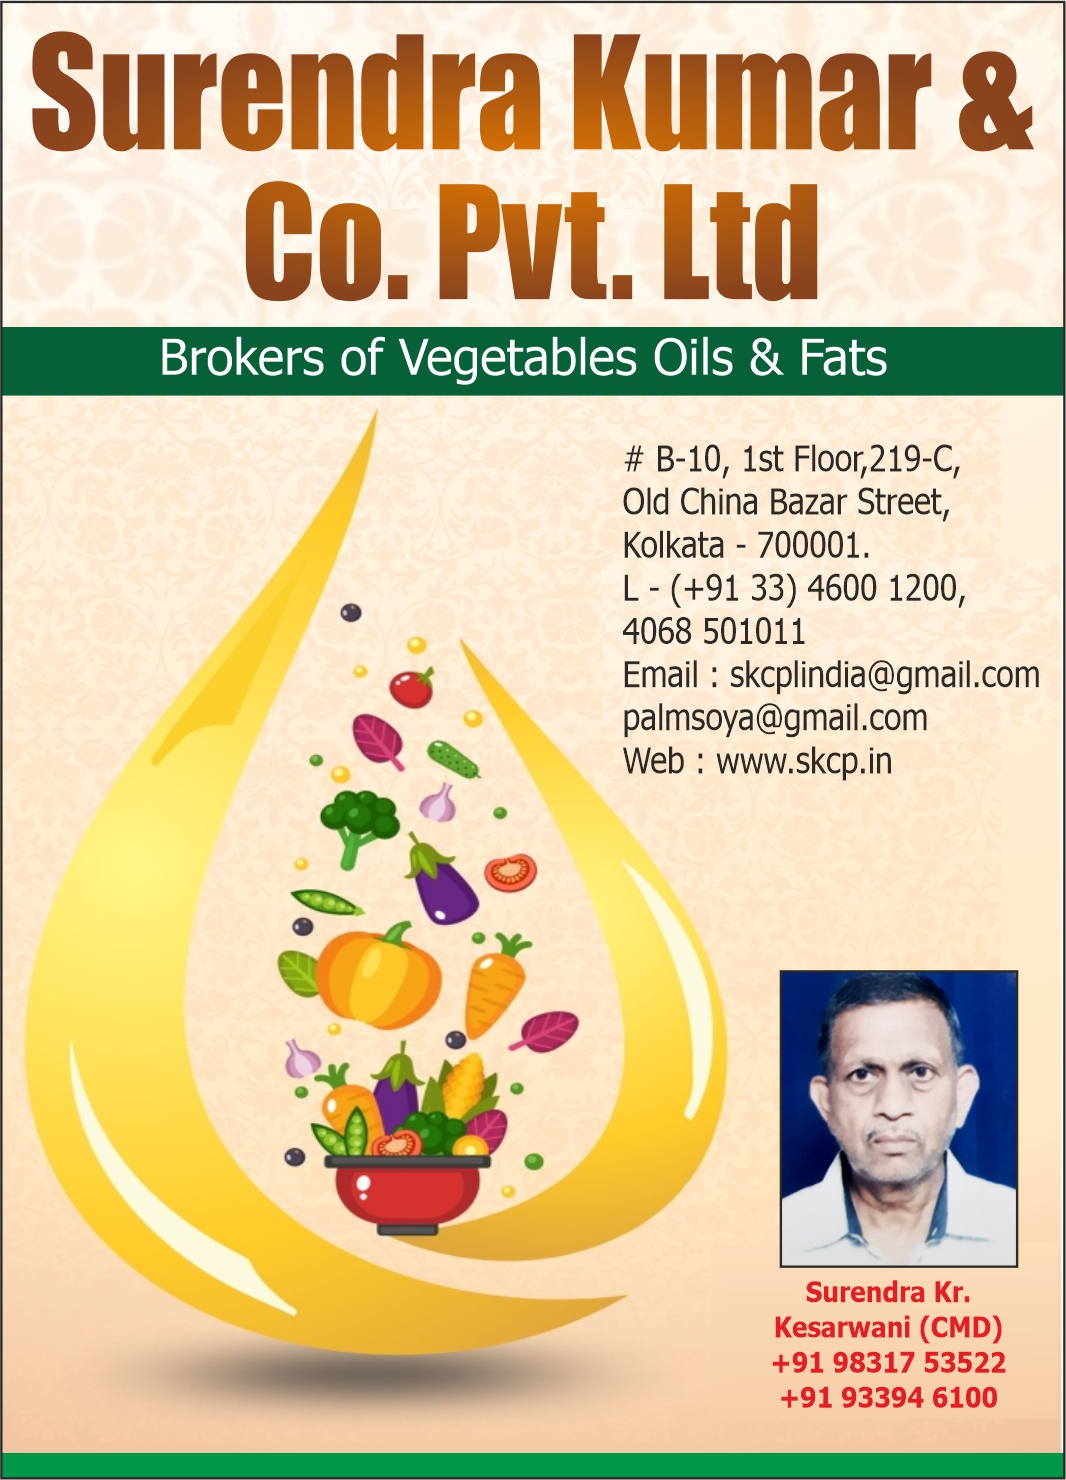 Surendra Kumar & Co. Pvt. Ltd.